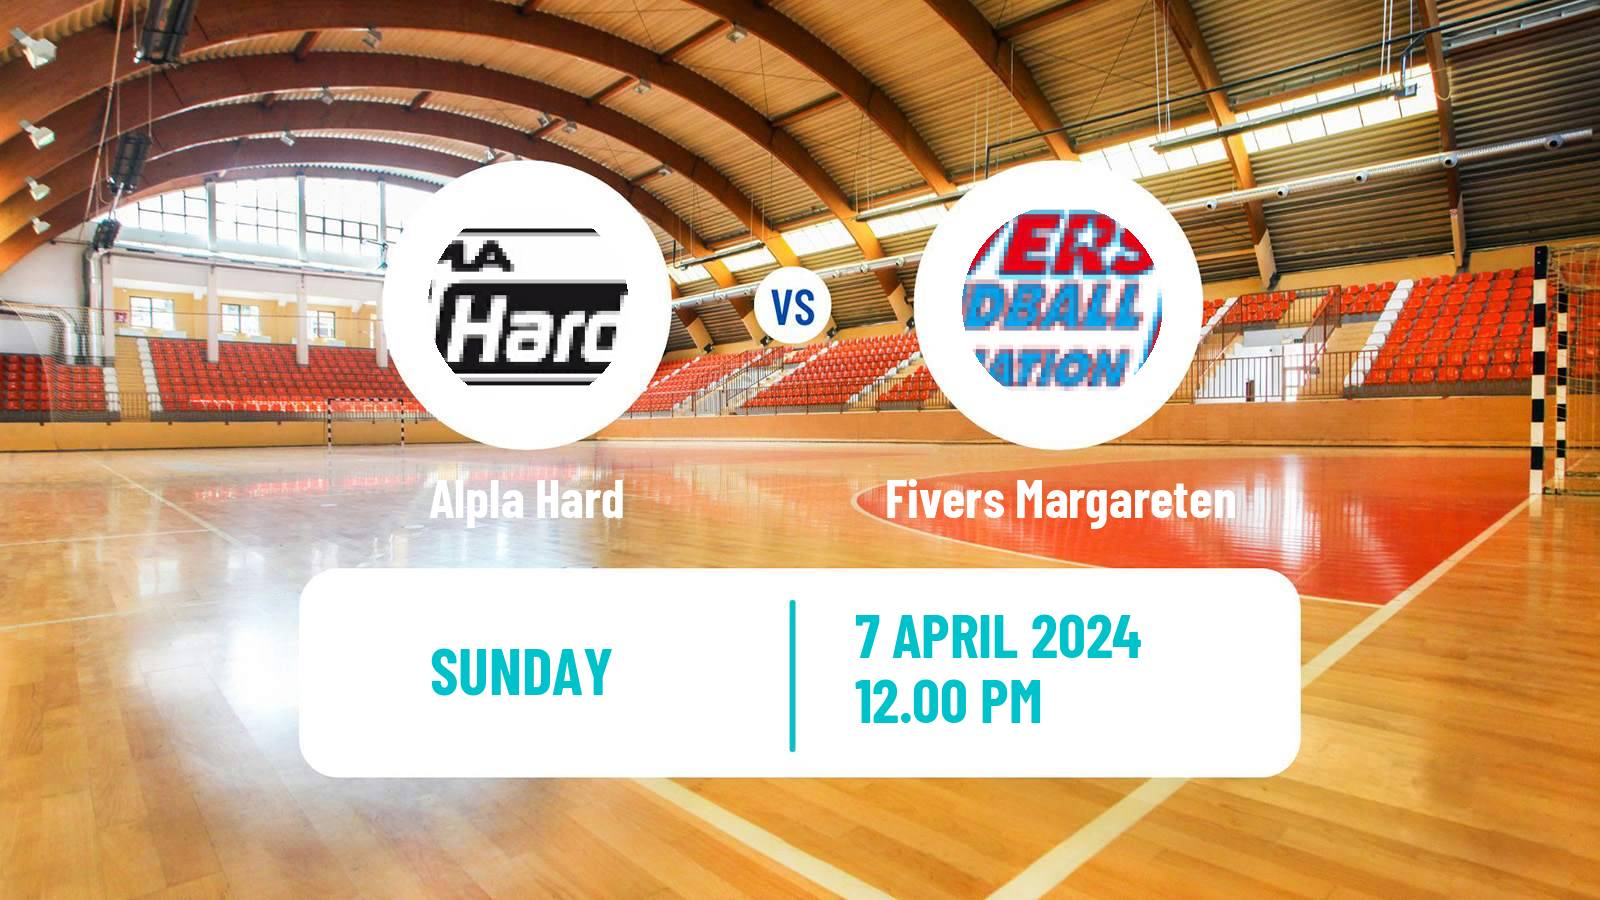 Handball Austrian NLA Handball Alpla Hard - Fivers Margareten